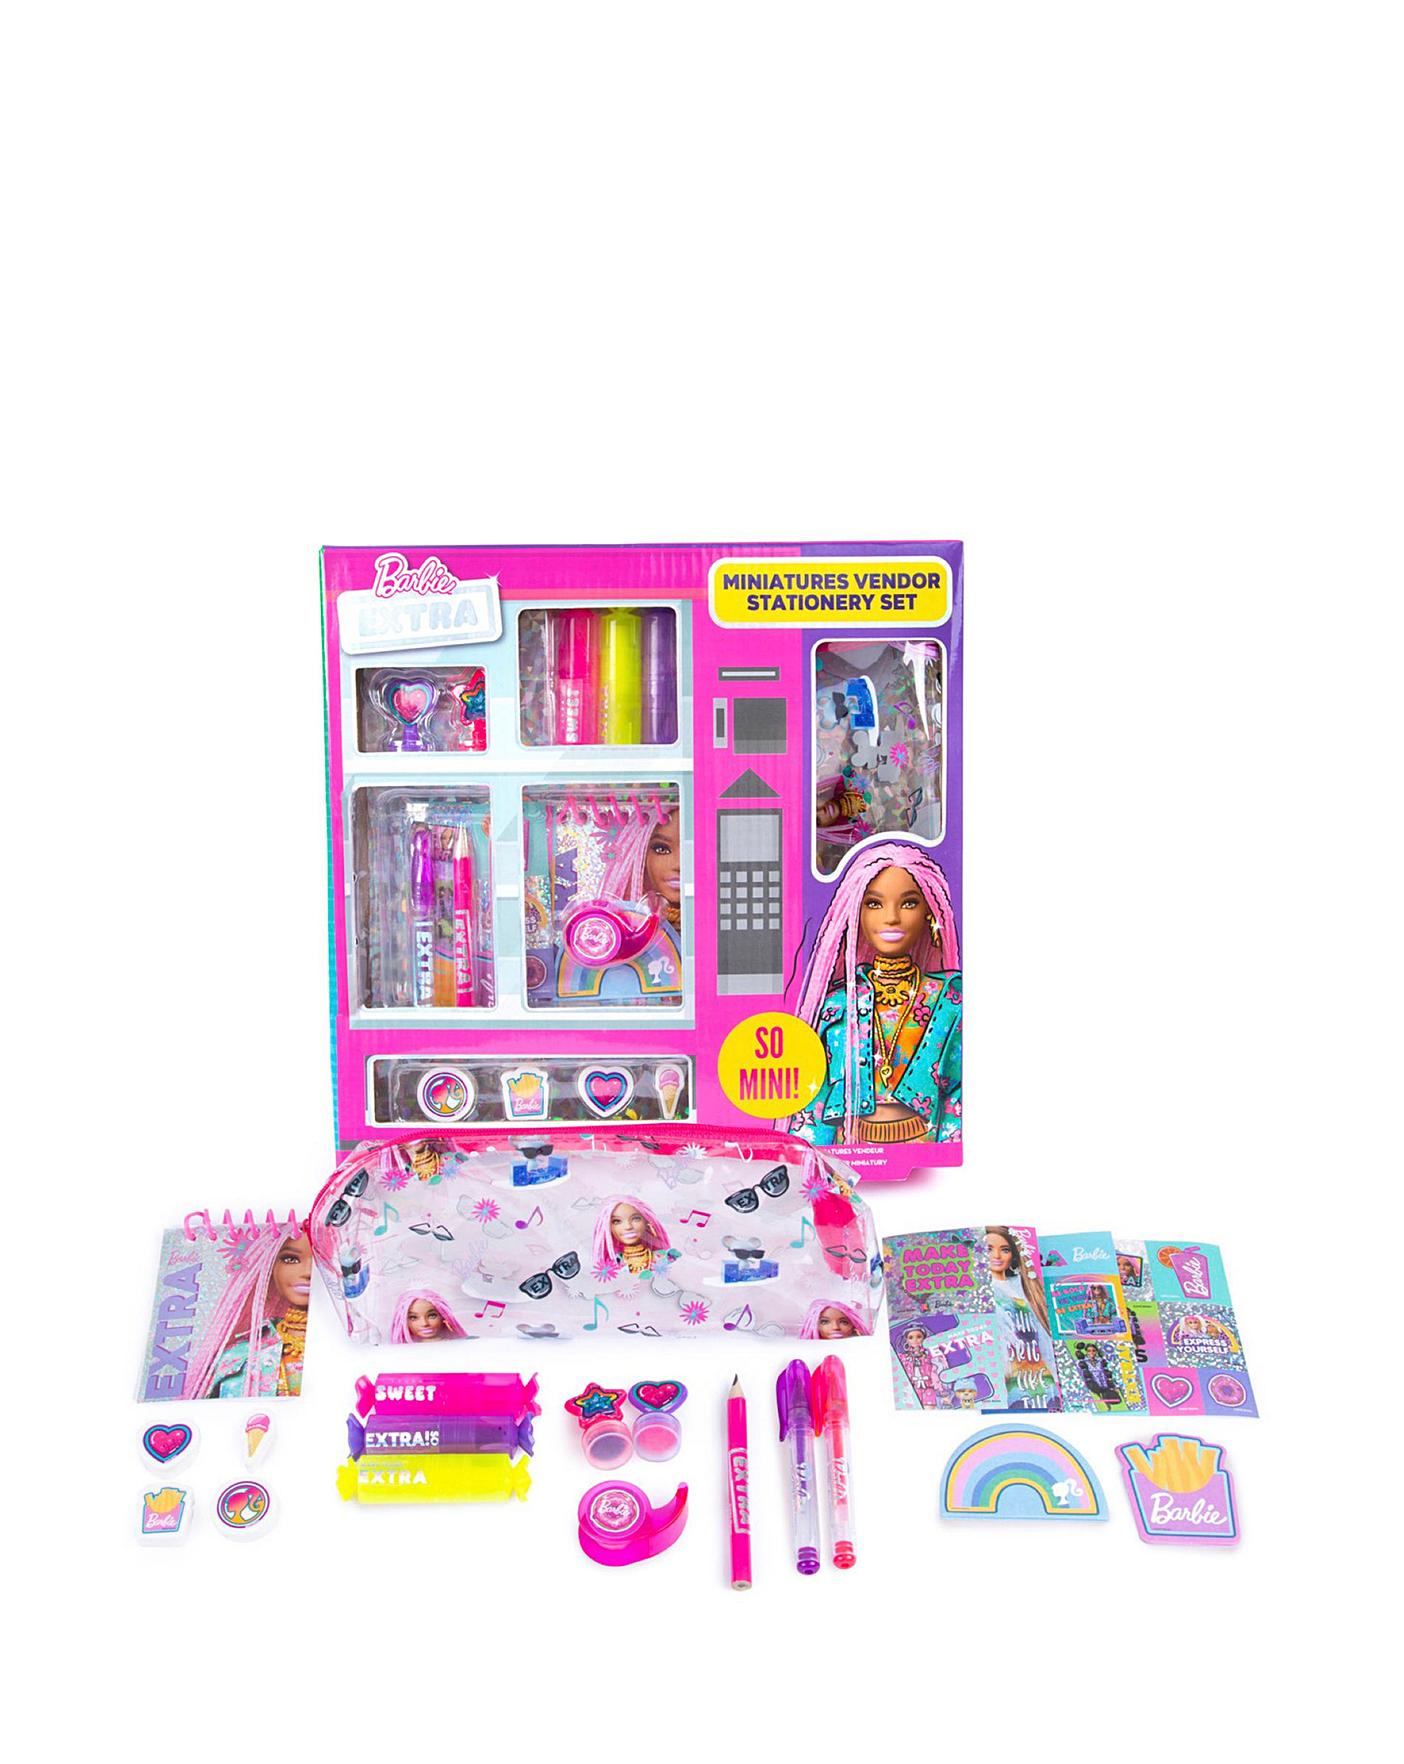 Barbie Miniatures Vending Stationery Set | Home Essentials